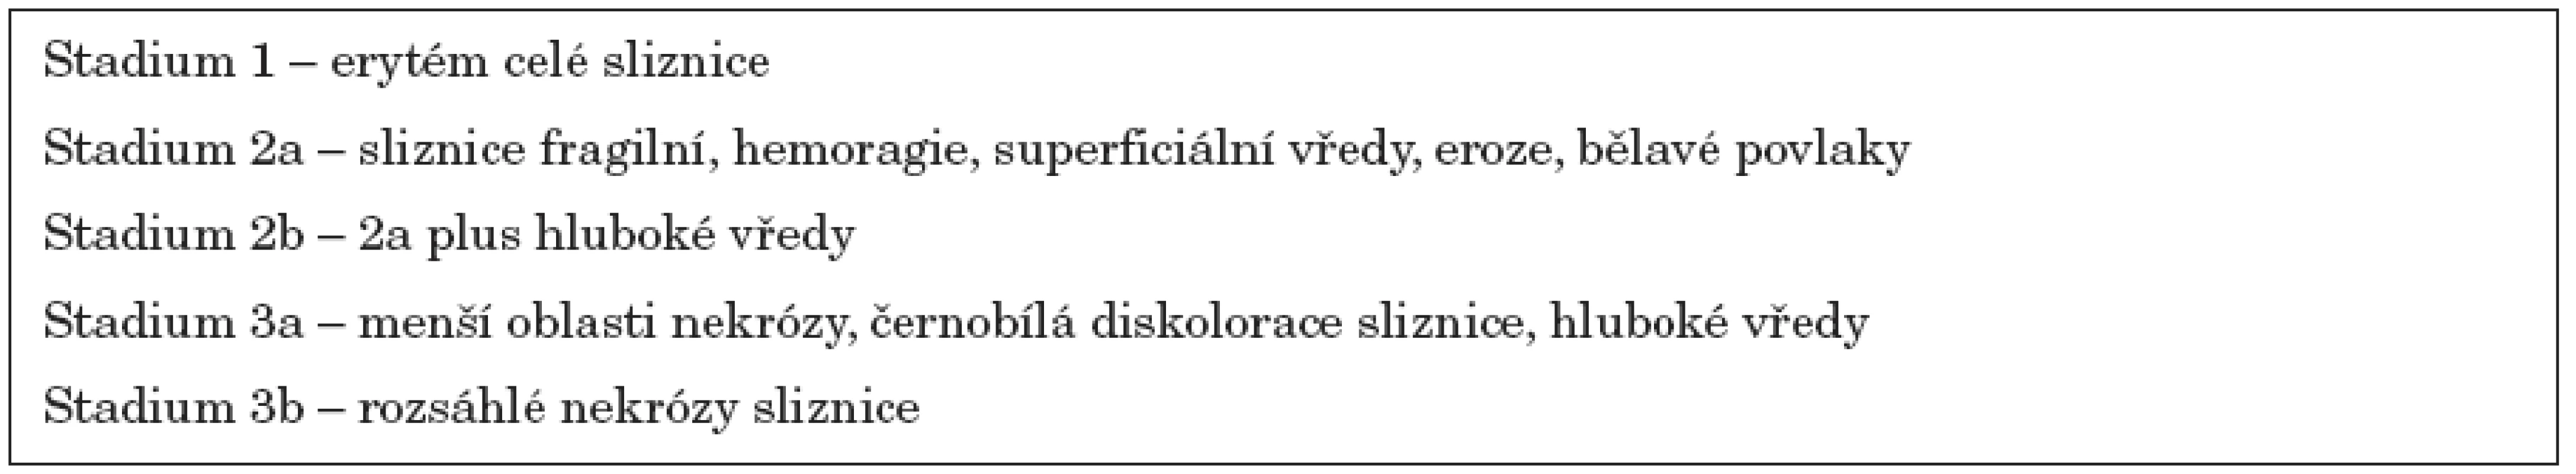 Endoskopická klasifikace slizničních změn poleptání jícnu [10].